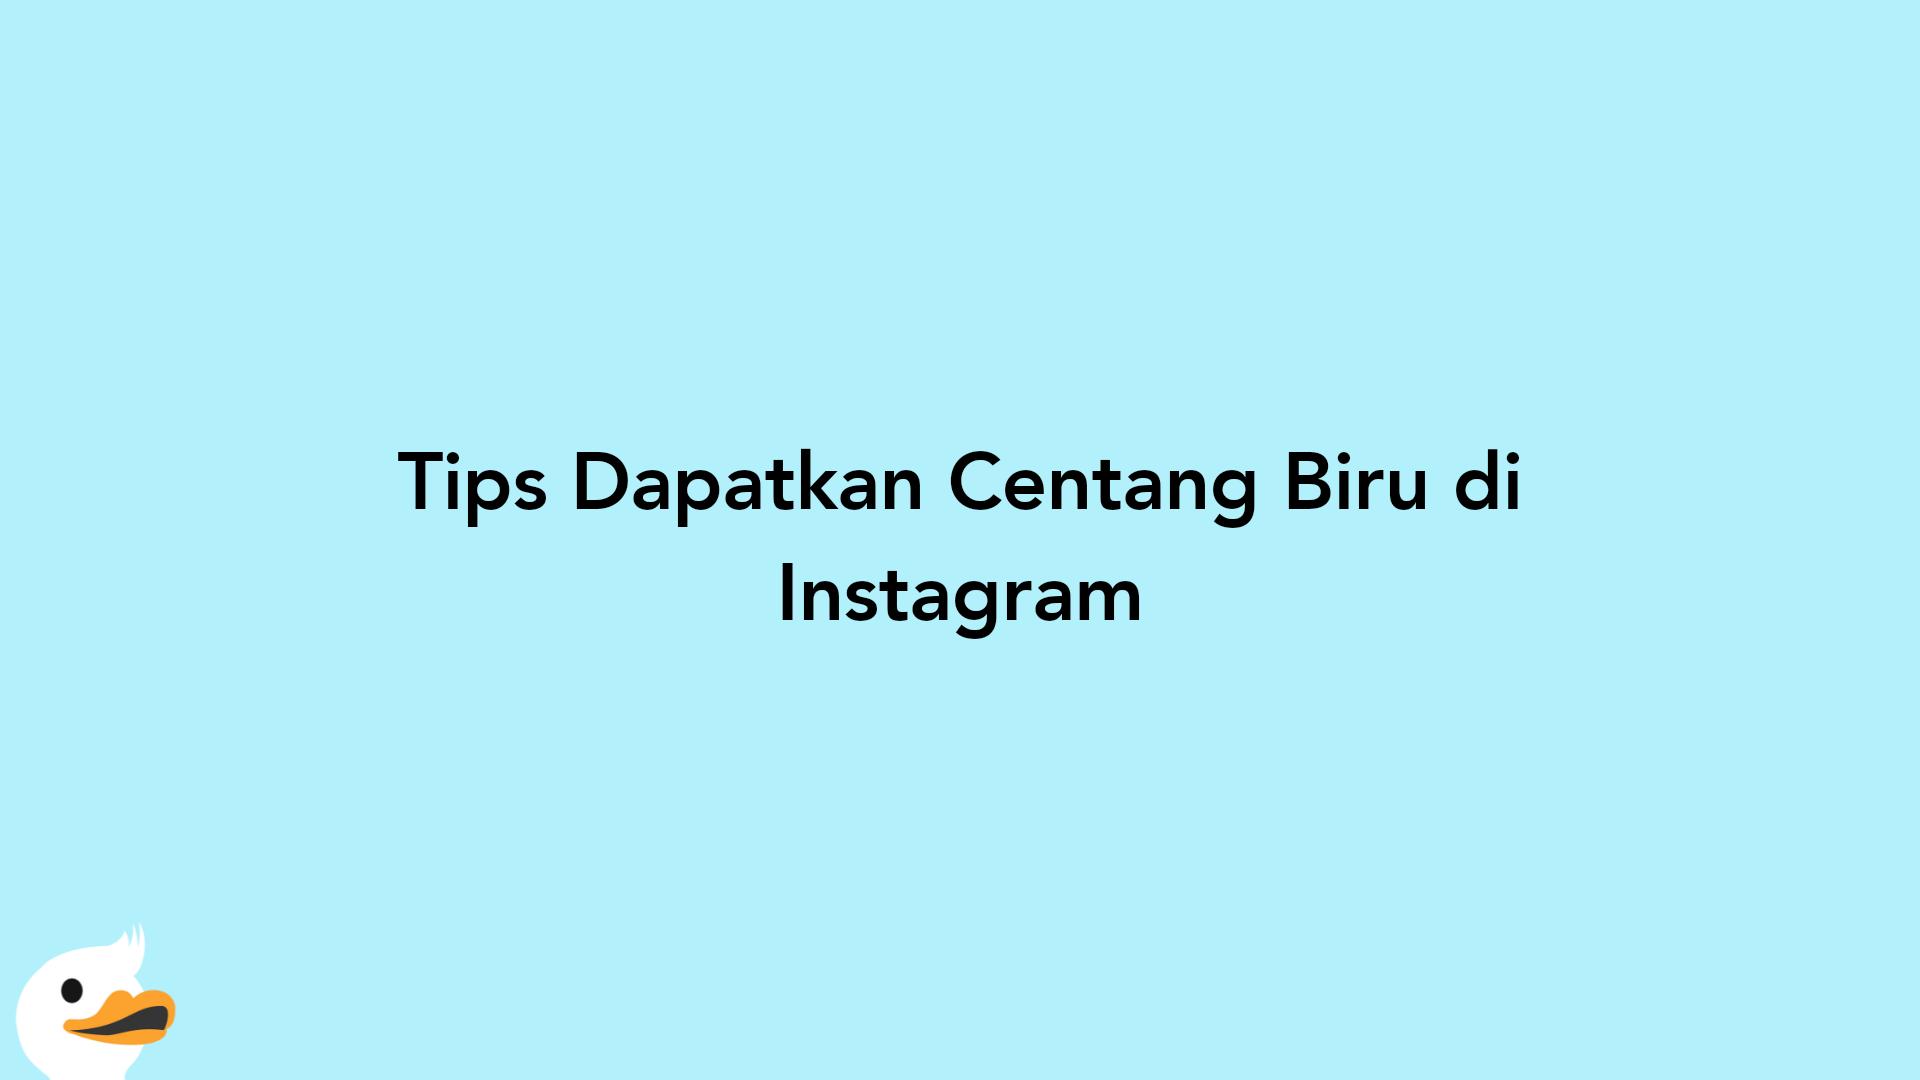 Tips Dapatkan Centang Biru di Instagram